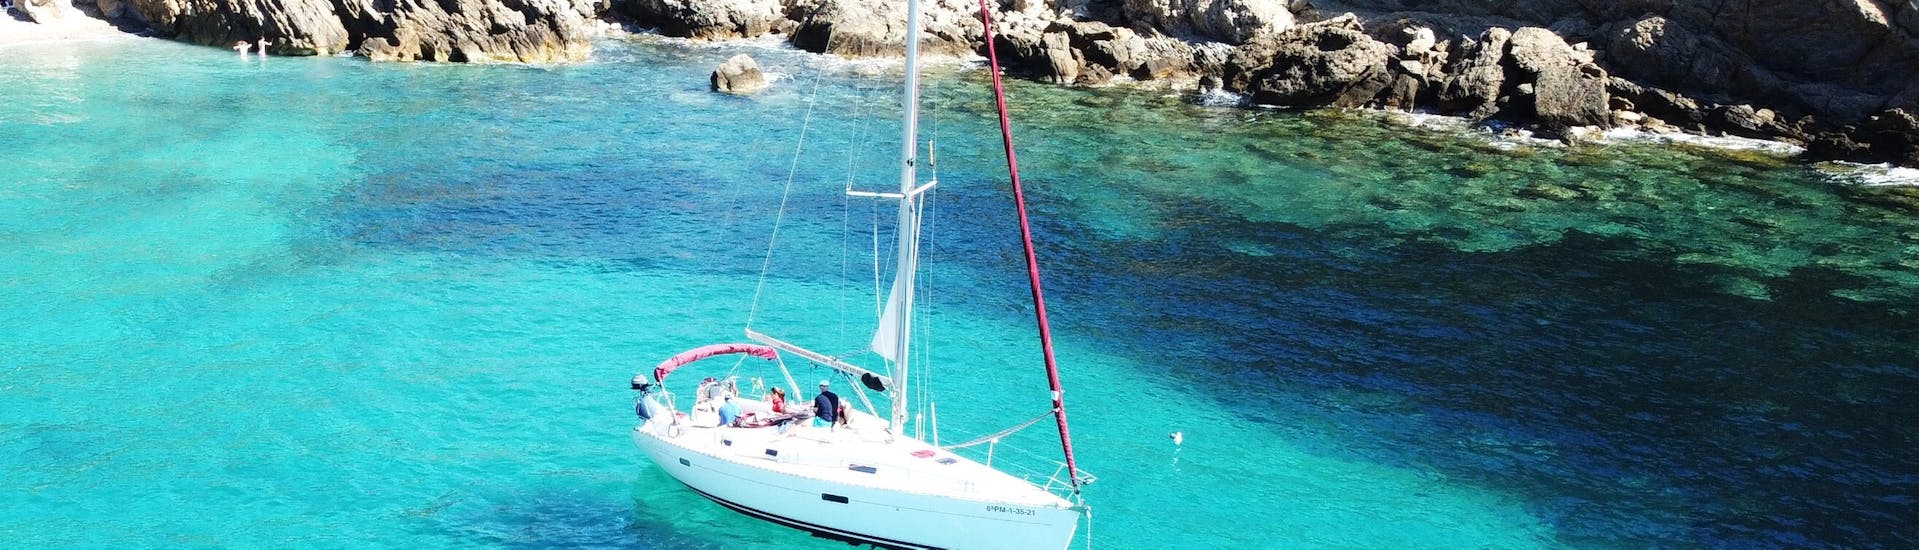 Onze boot vaart op het water tijdens de Privé Boottocht van een hele dag in Mallorca vanuit Port d'Andratx met Pura Vida Sailing Mallorca.